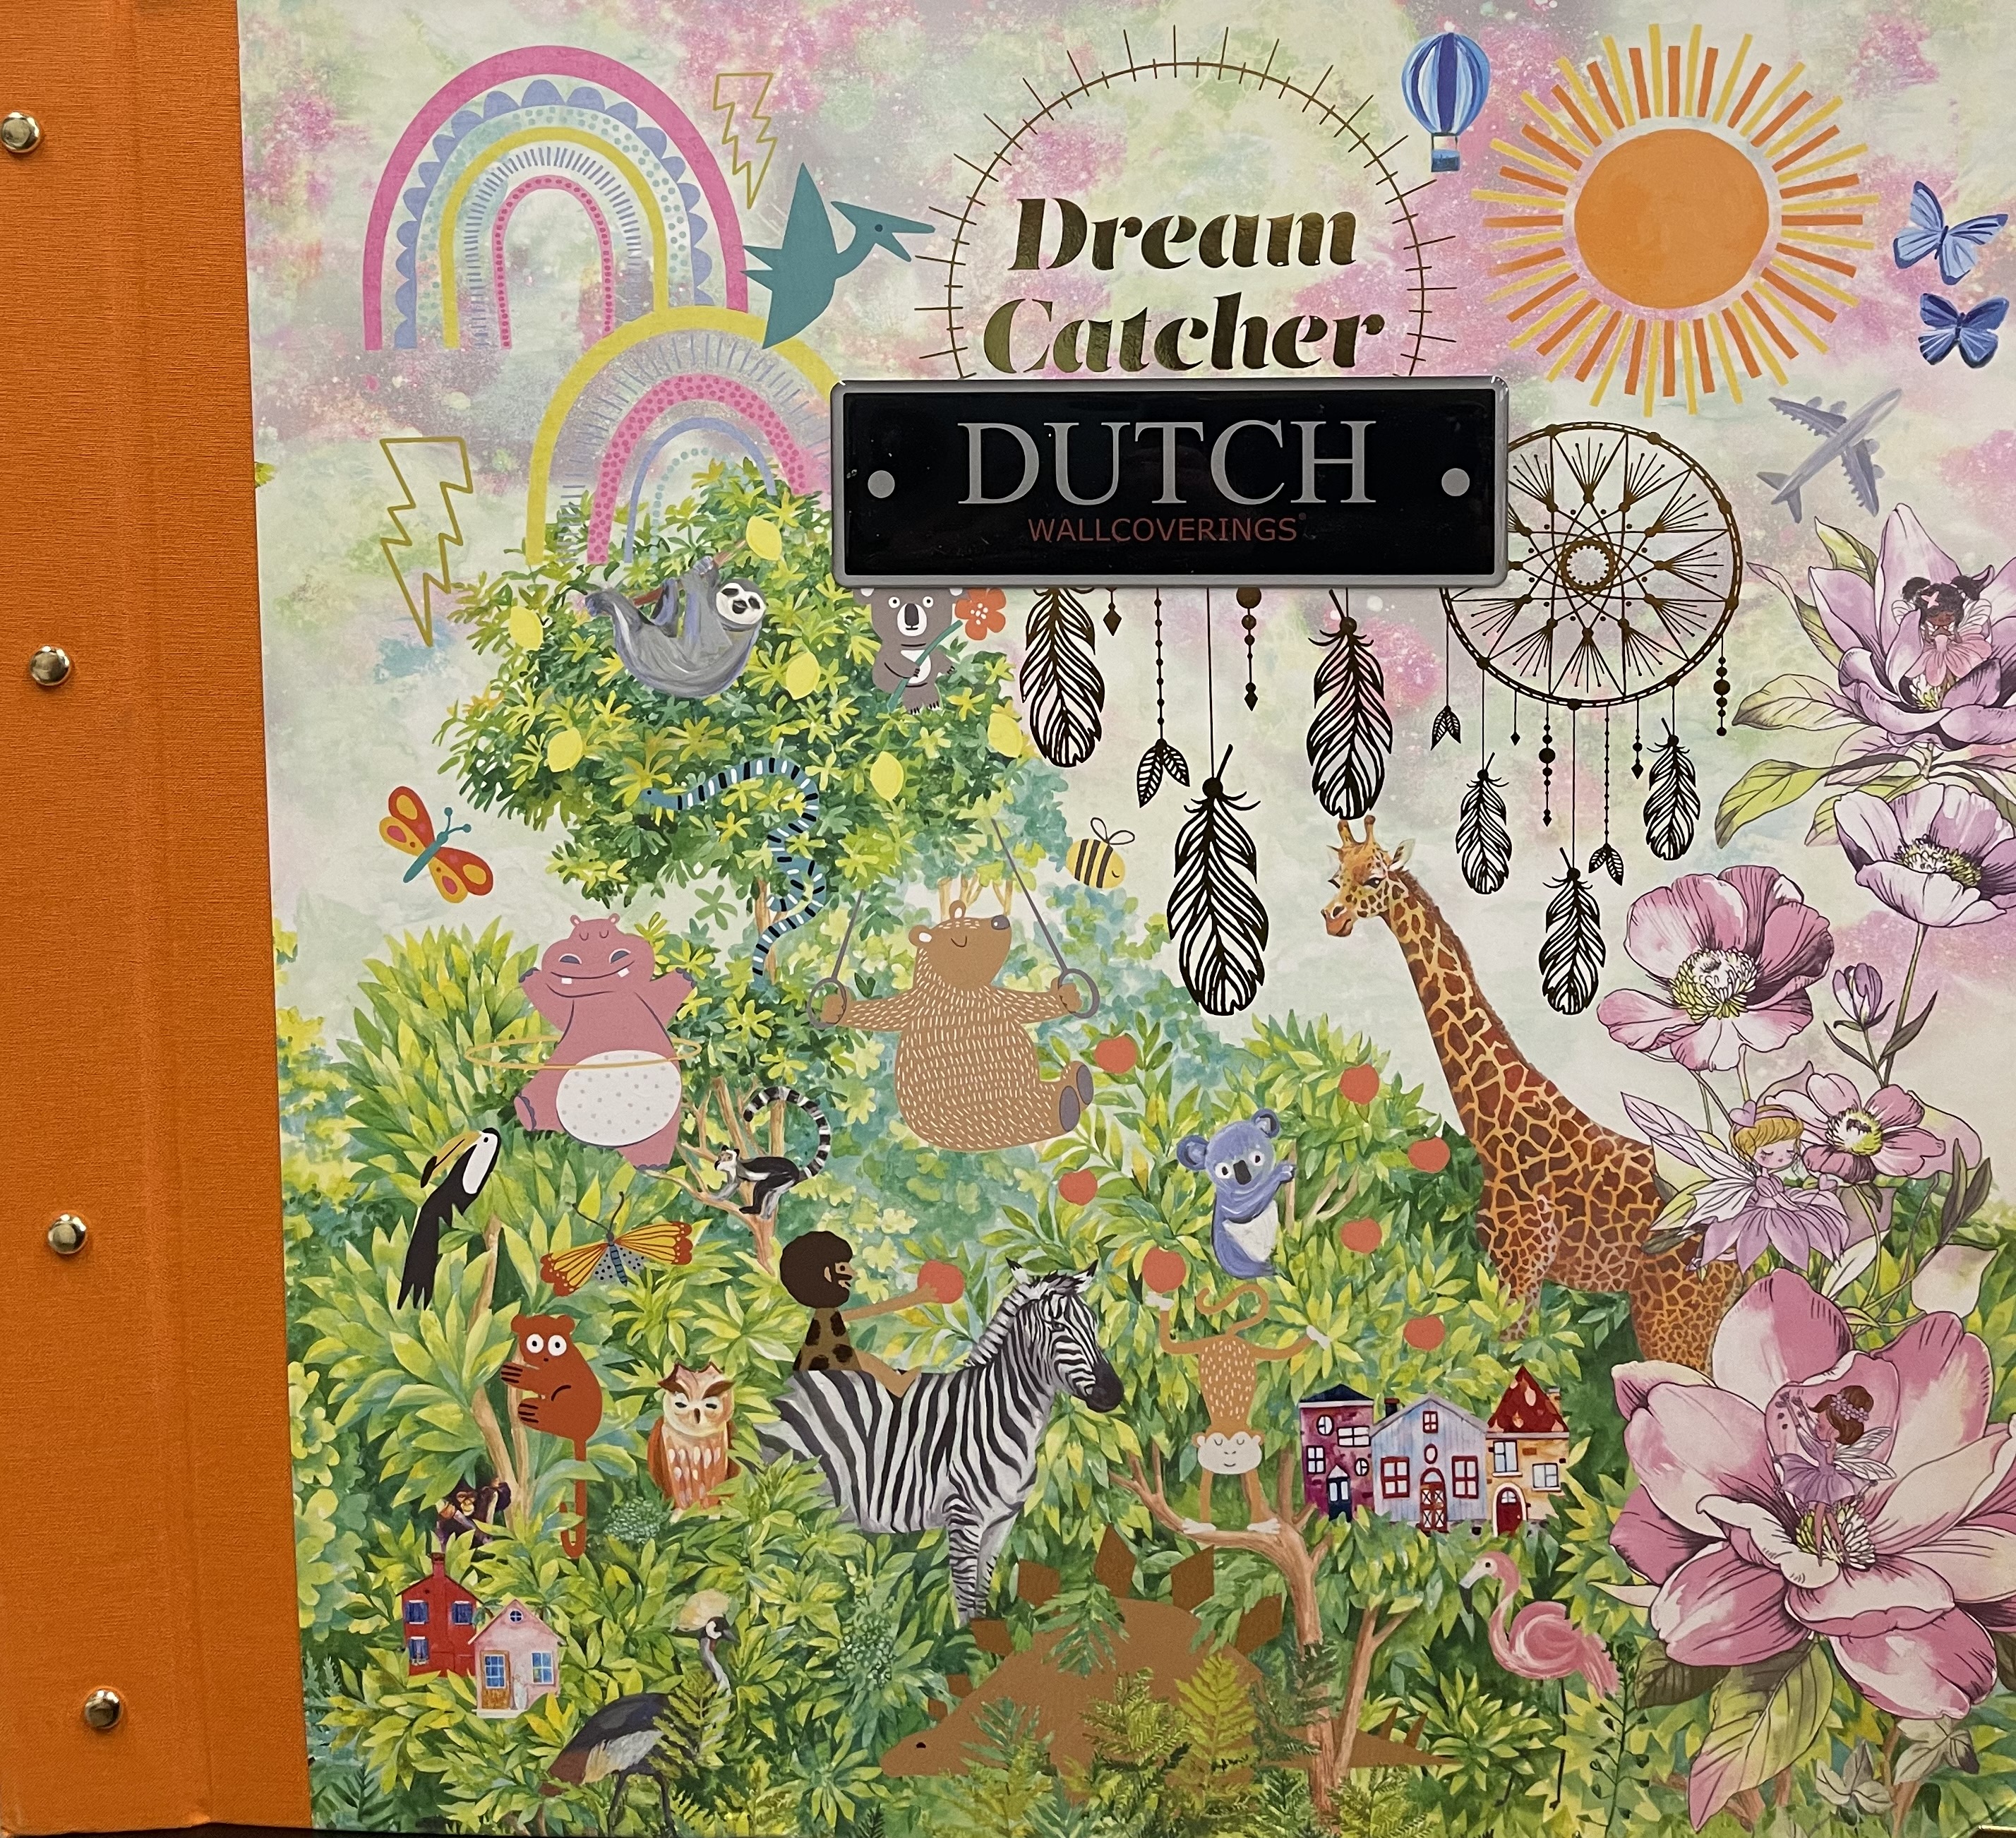 Wallpaper - Dreamcatcher